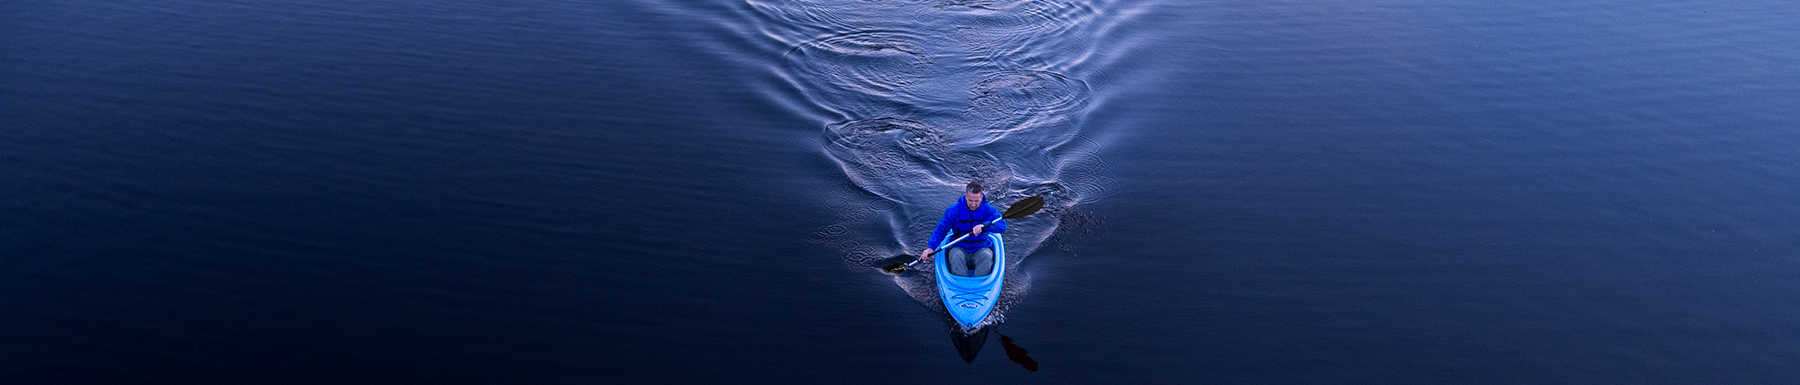 Man in blue kayak rowing